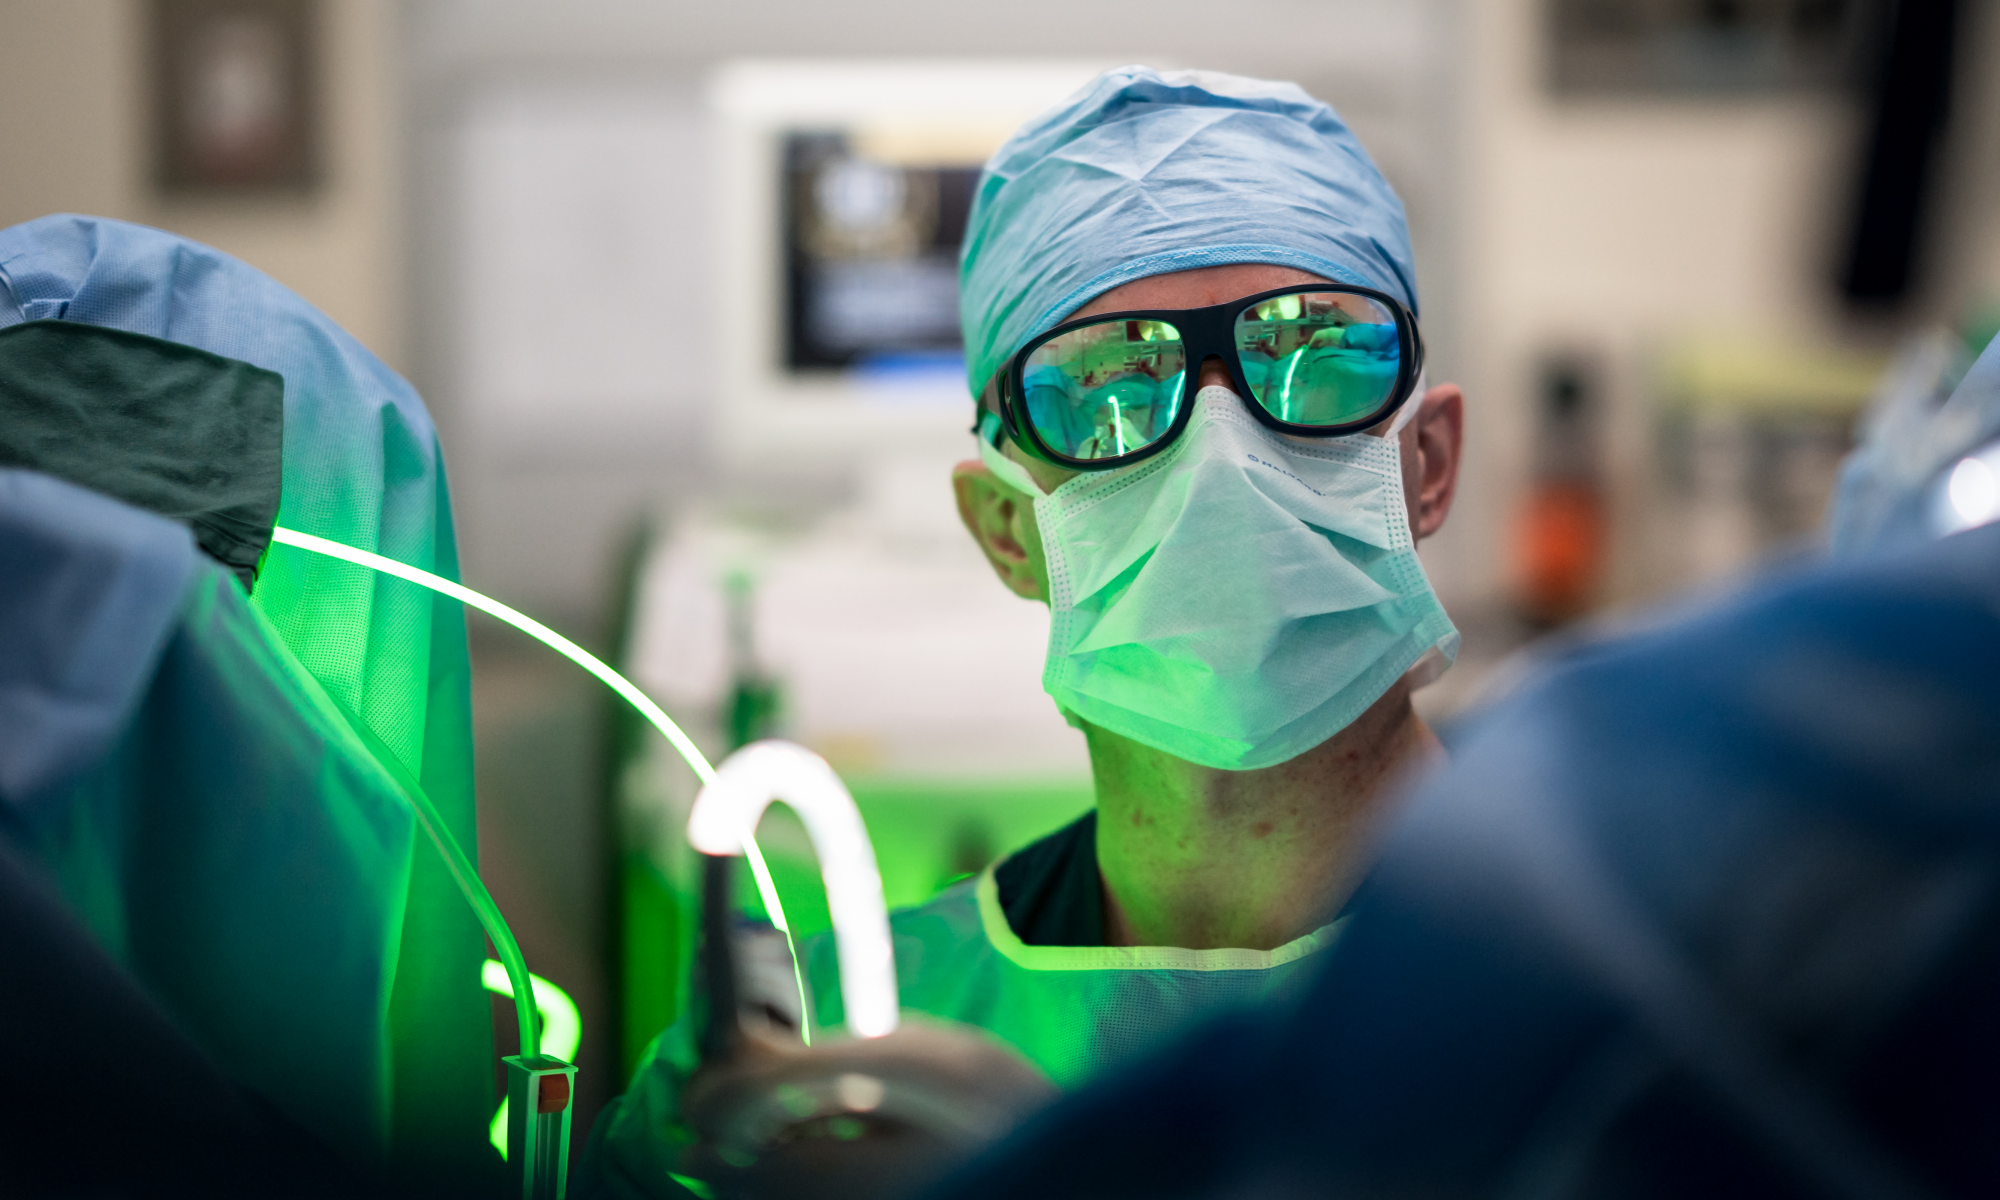 Peter Campell - Urology - Greenlight laser